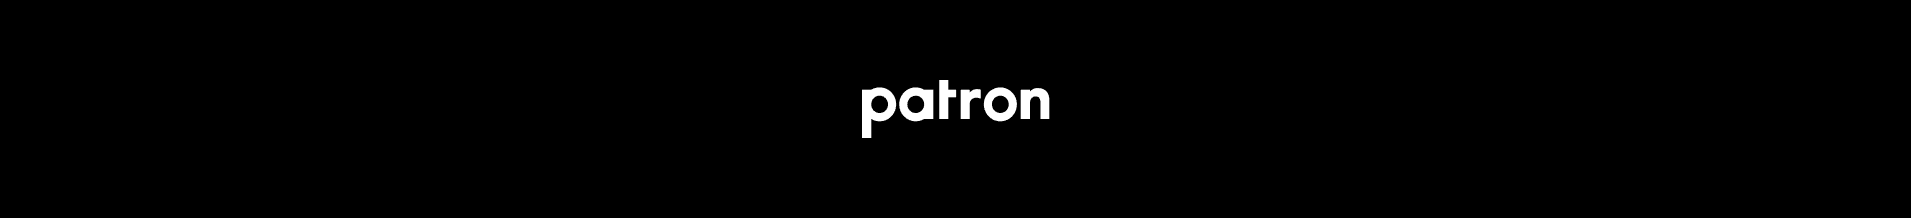 PATRON-NFT bannière